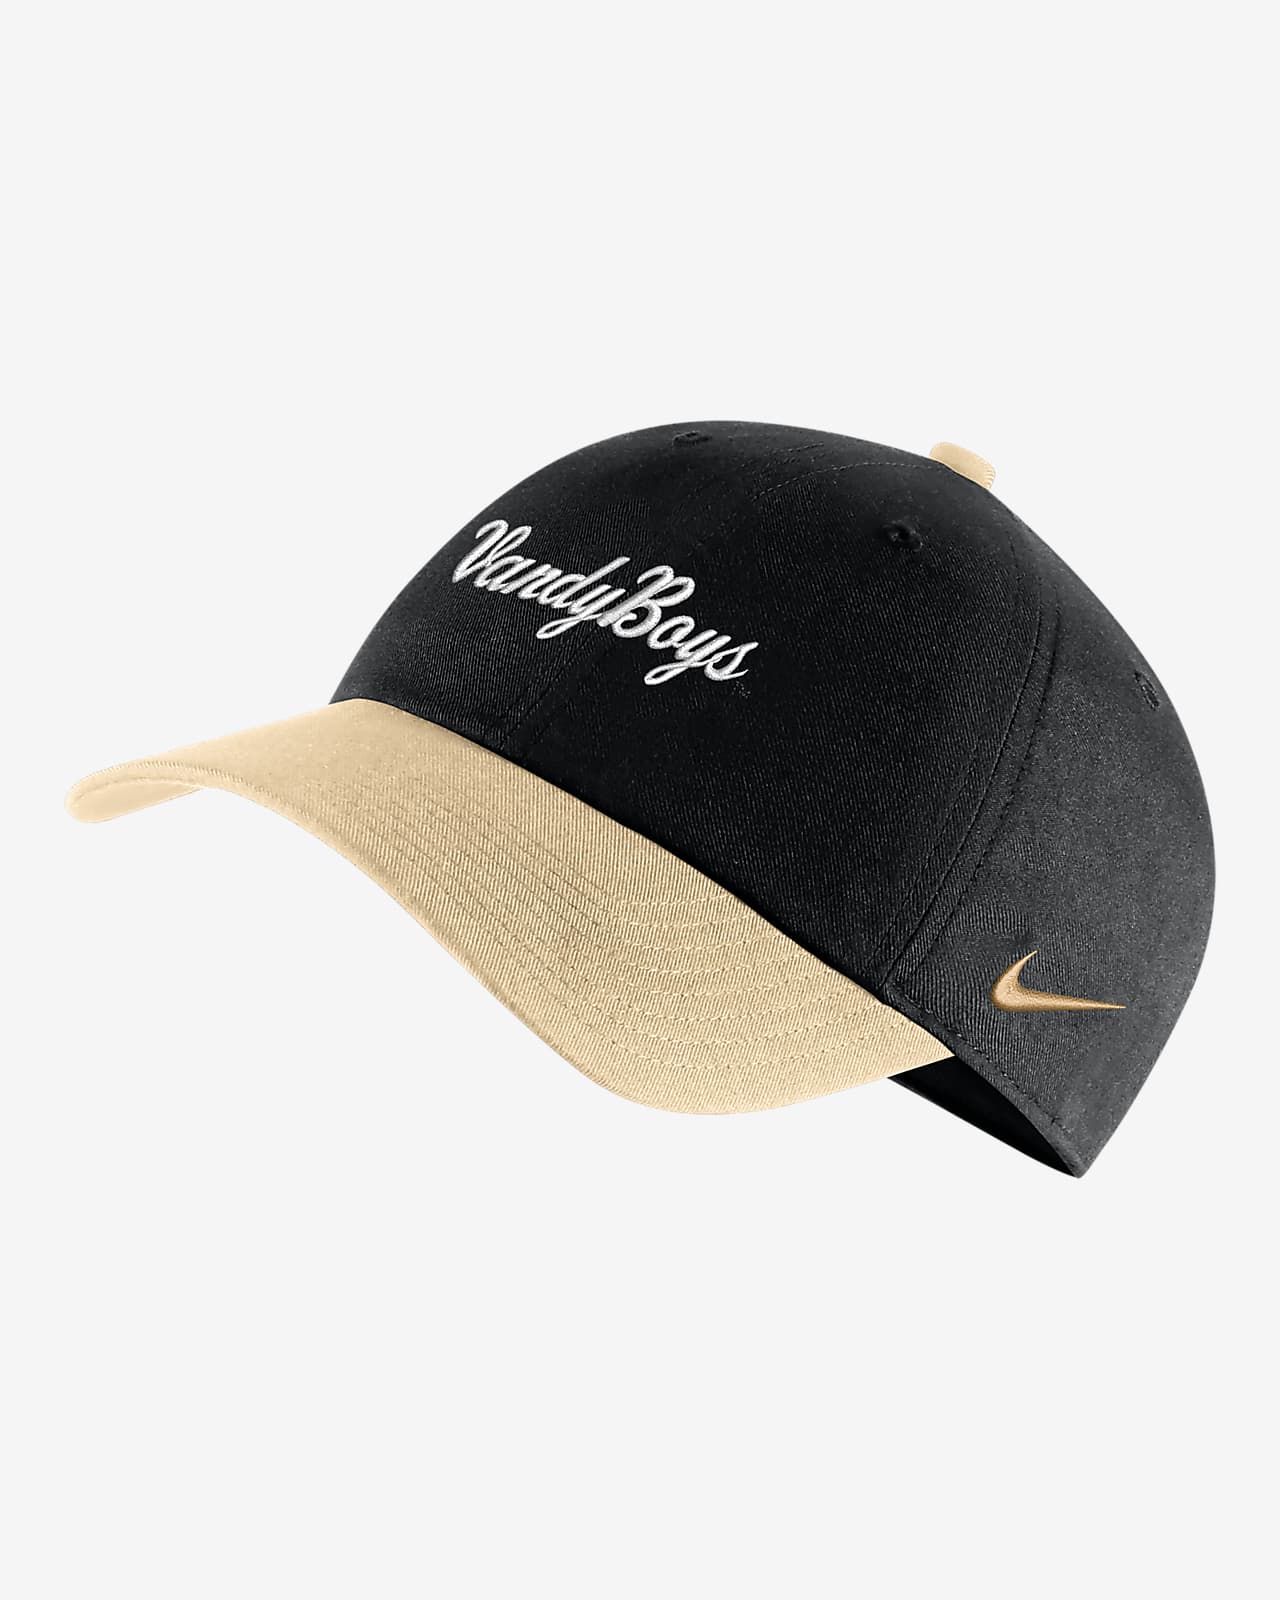 Vanderbilt Heritage86 Nike College Baseball Hat